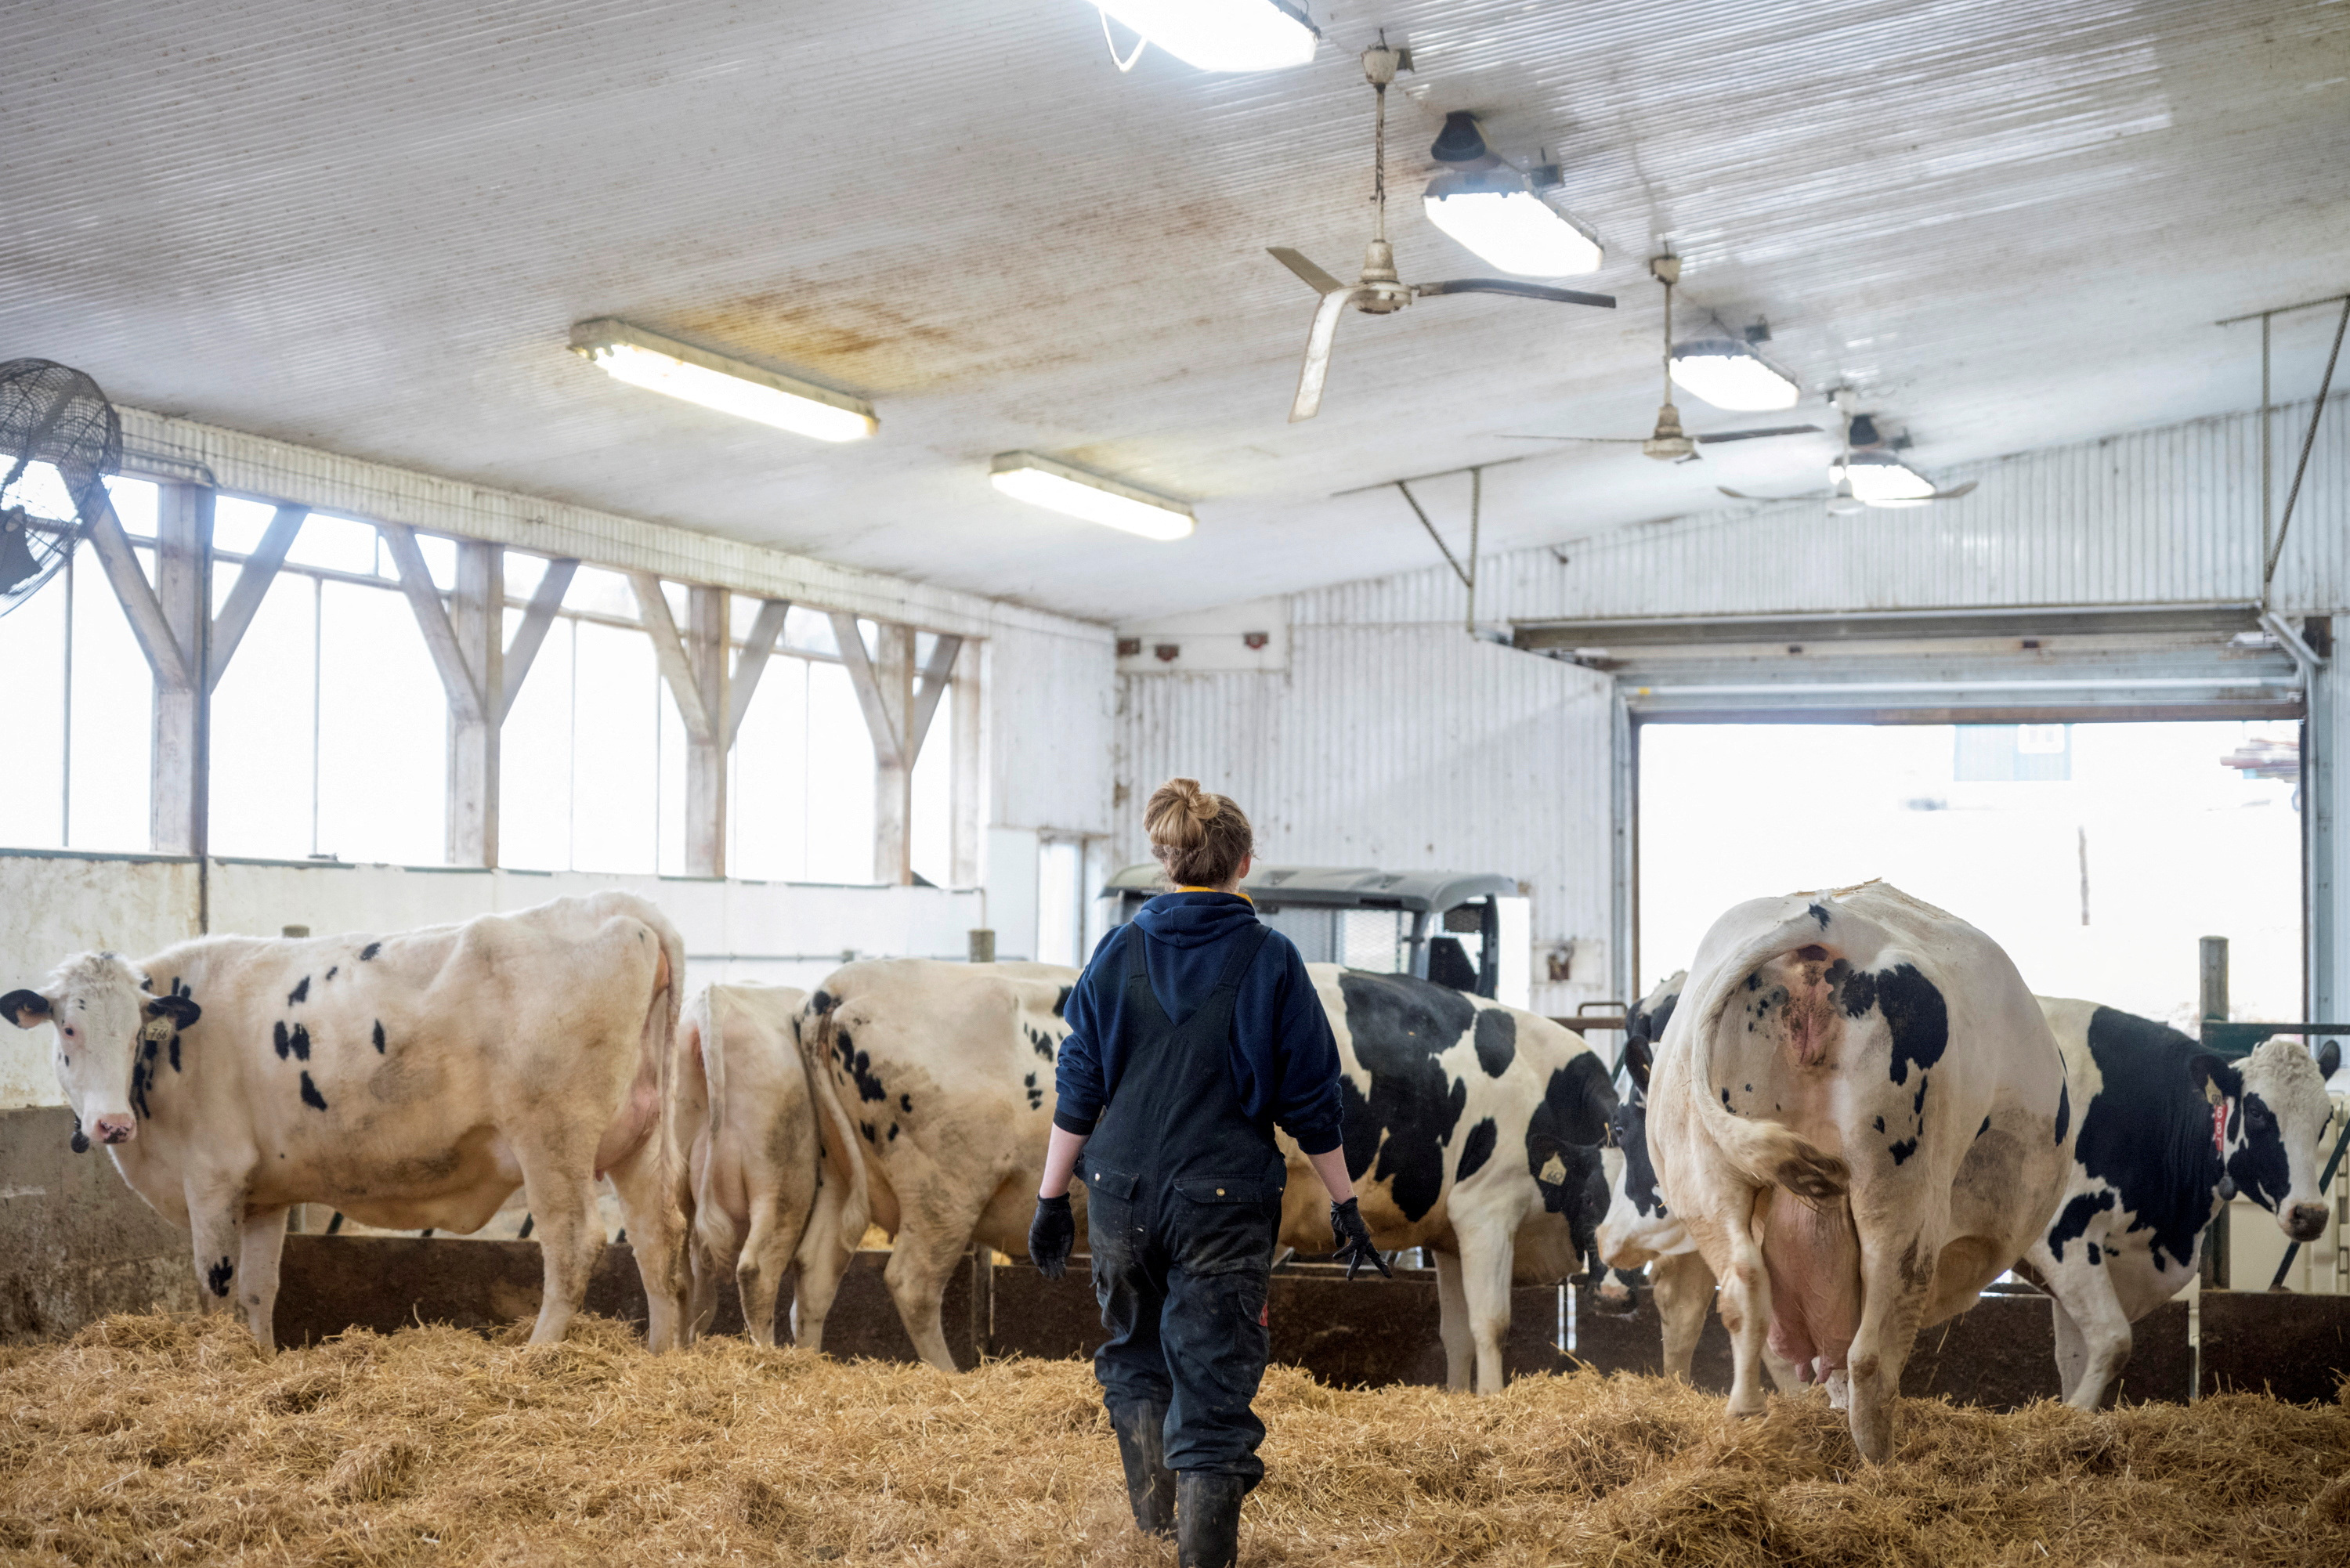 米欧、鳥インフル対策で畜産酪農家などへワクチン接種検討